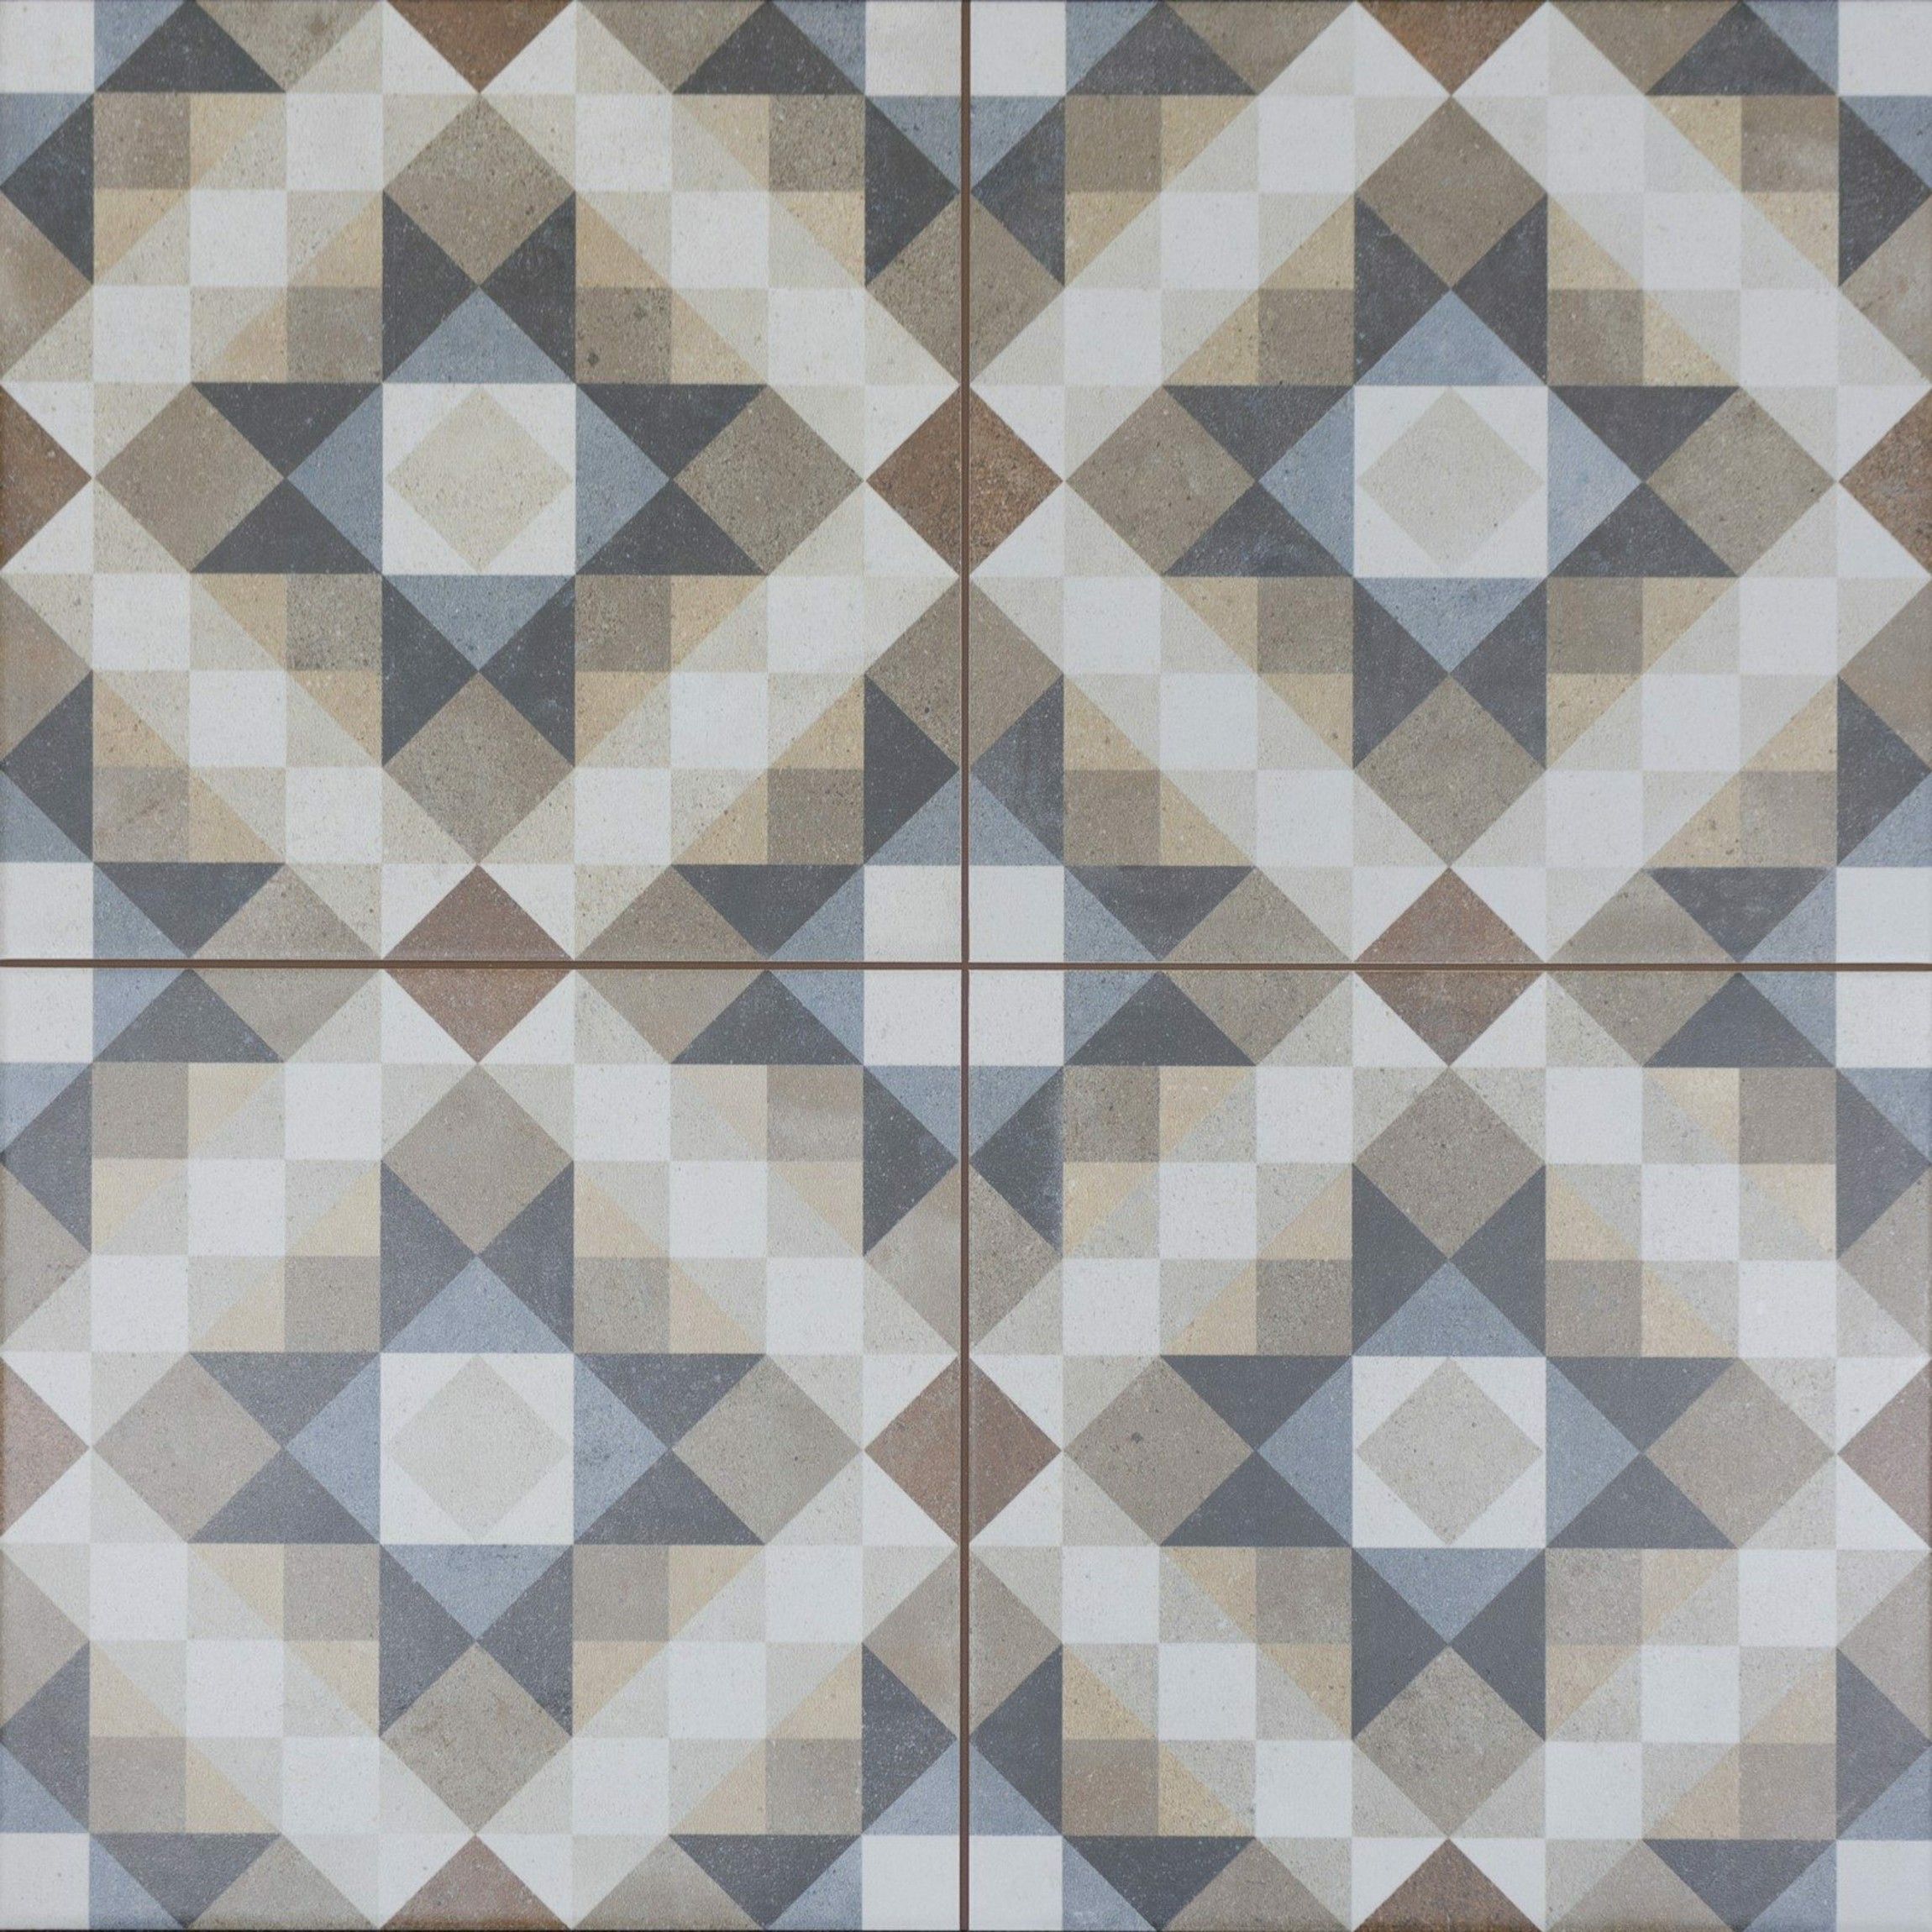 Chester Rustic Floor Tiles From, Rustic Floor Tile